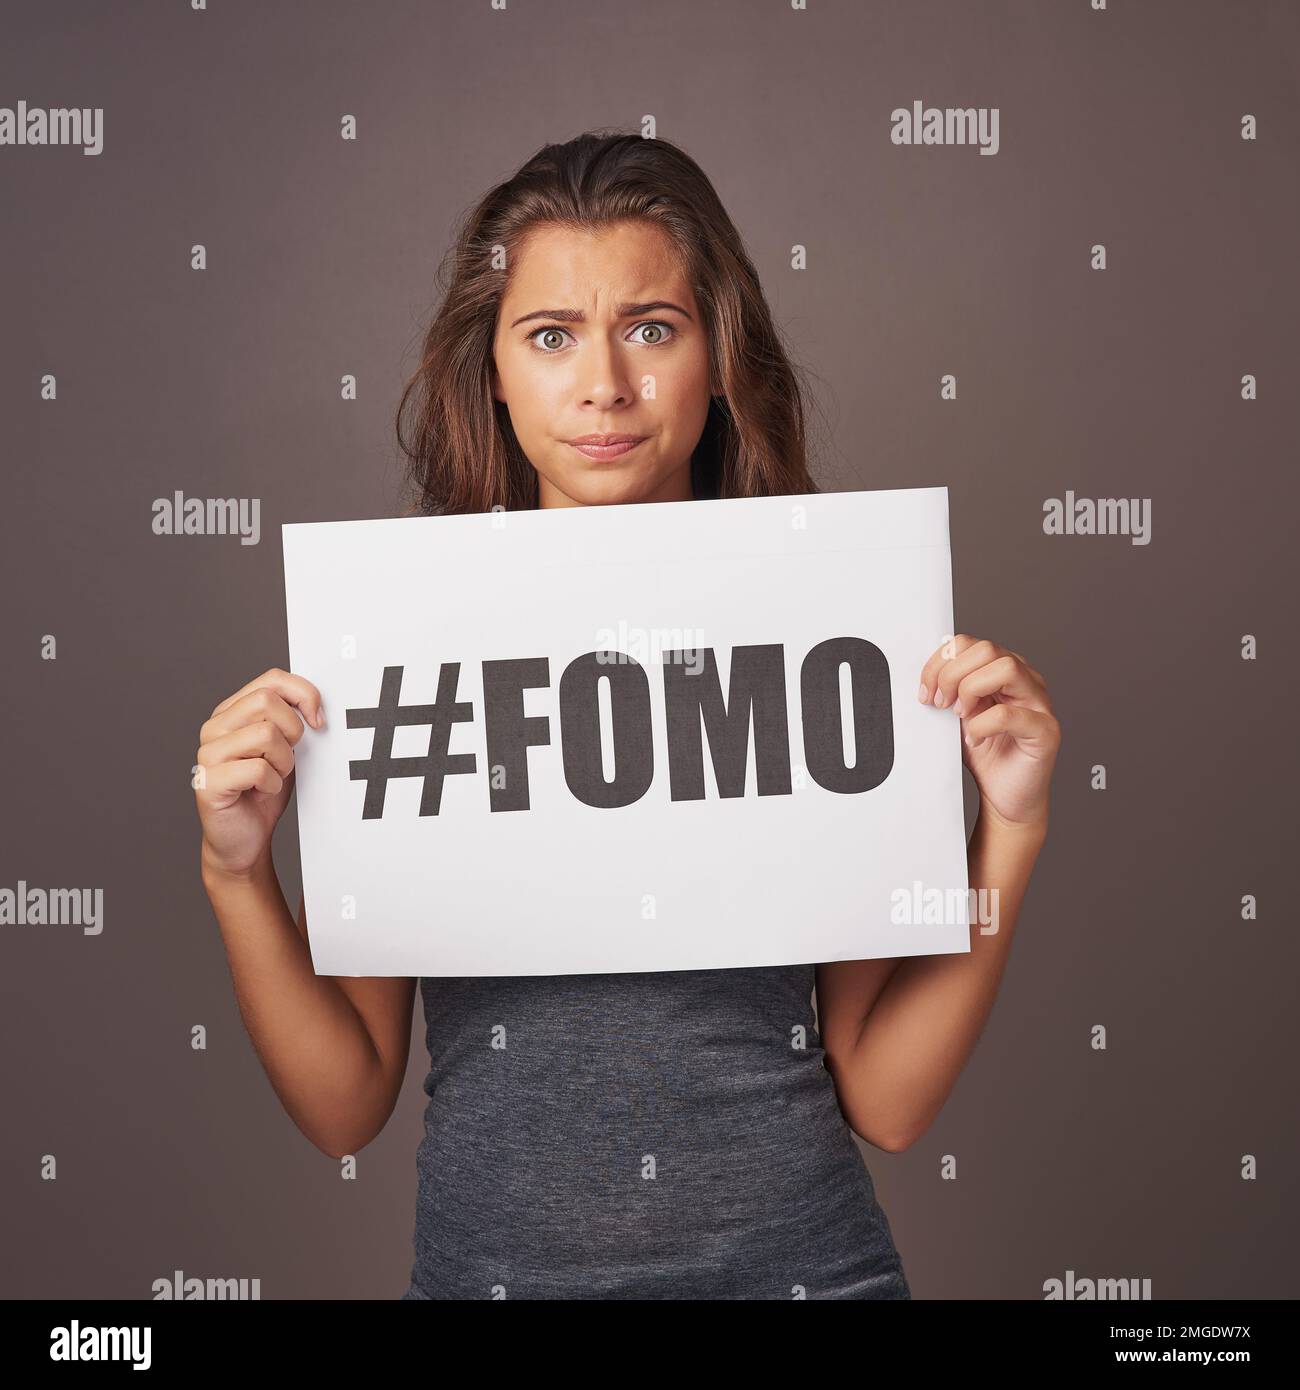 Da qualche parte qualcun altro sta facendo qualcosa che voglio fare. Foto studio di una giovane donna attraente con un cartello con su scritto FOMO contro un grigio Foto Stock